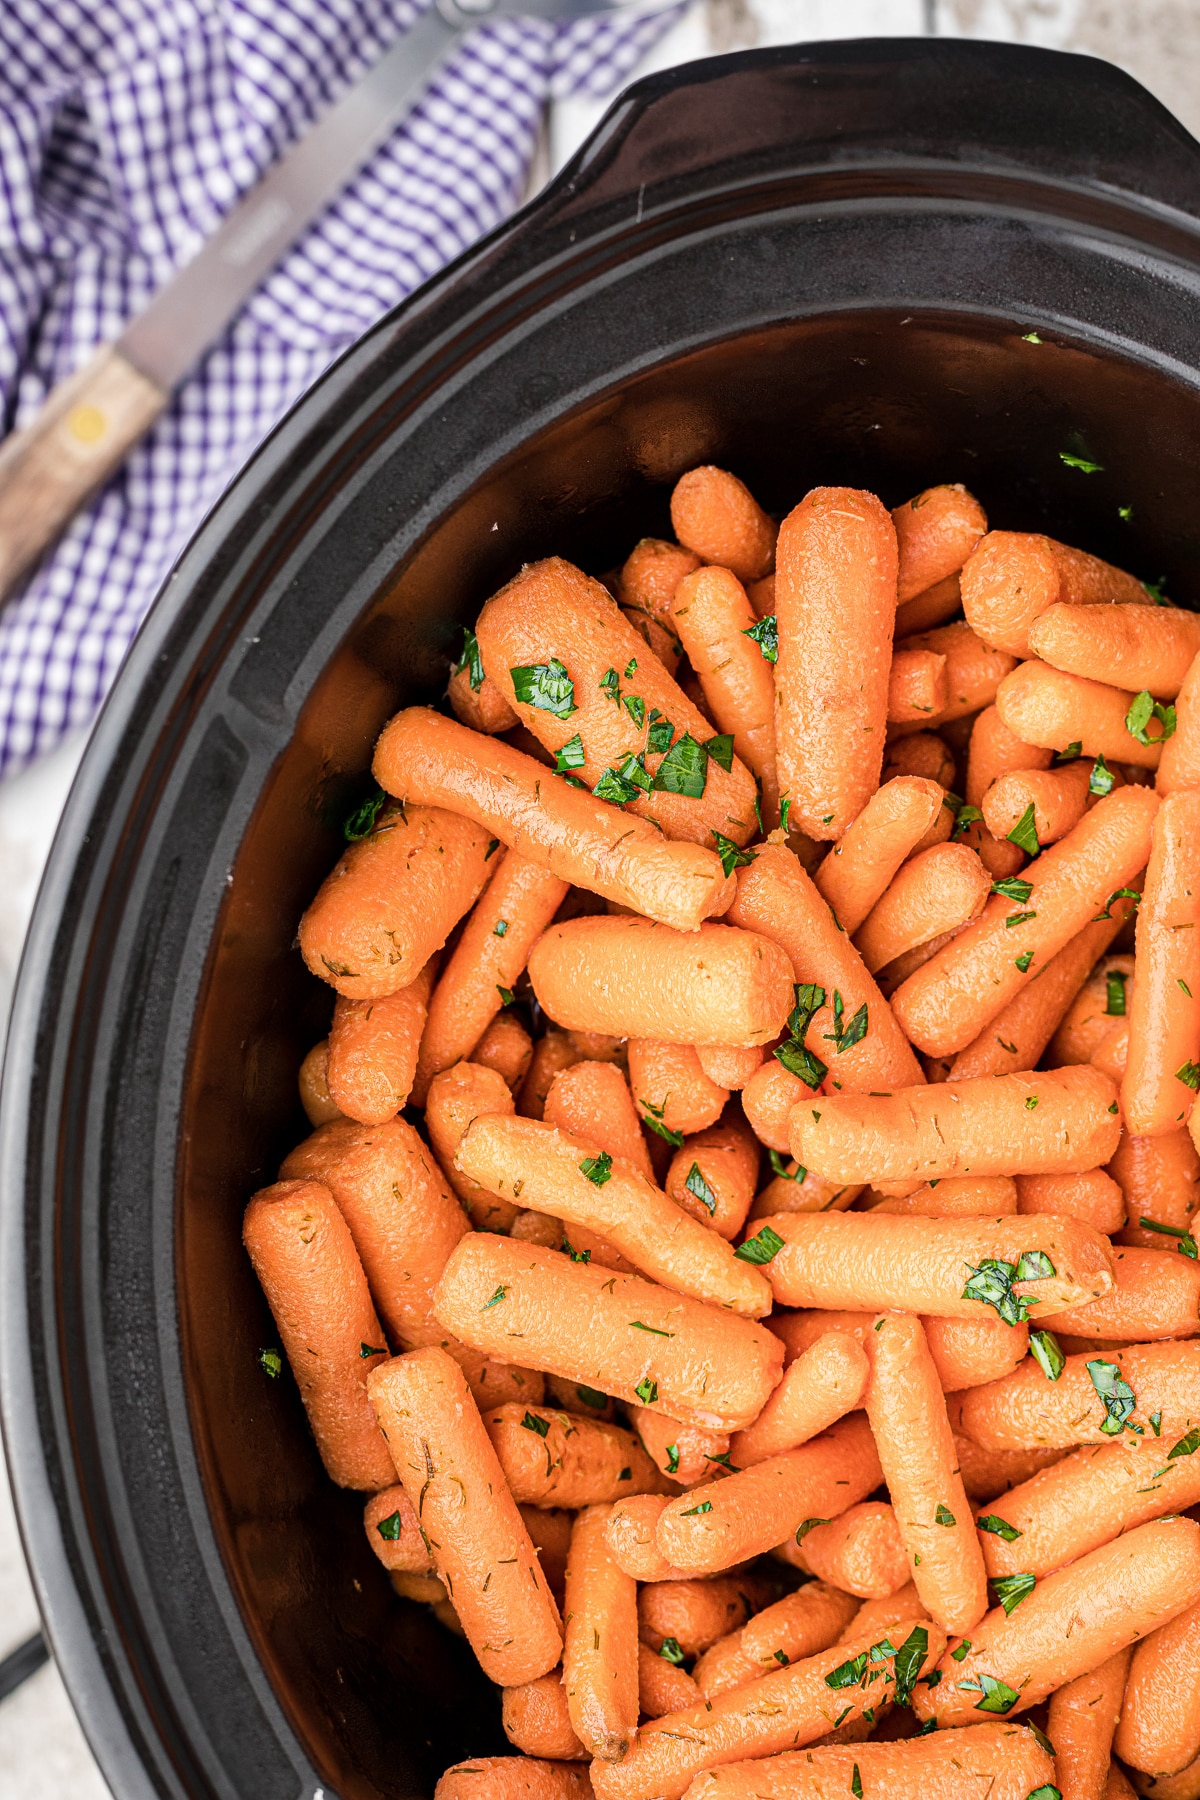 Crock Pot Potatoes and Carrots - Recipes That Crock!